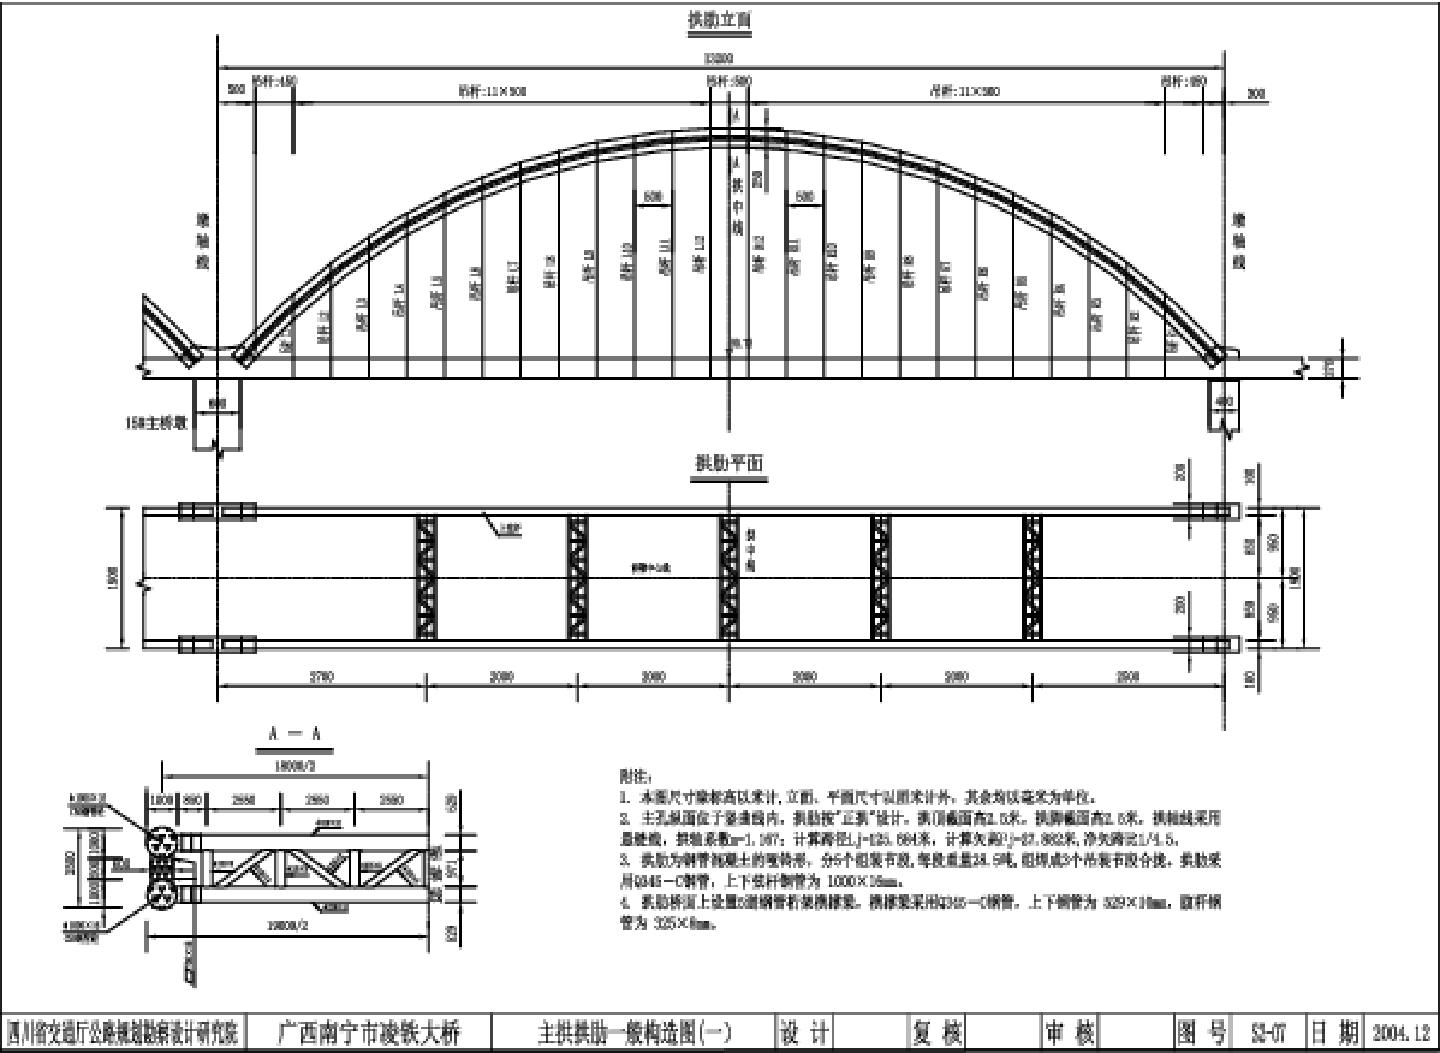  主拱拱肋一般构造图(一）